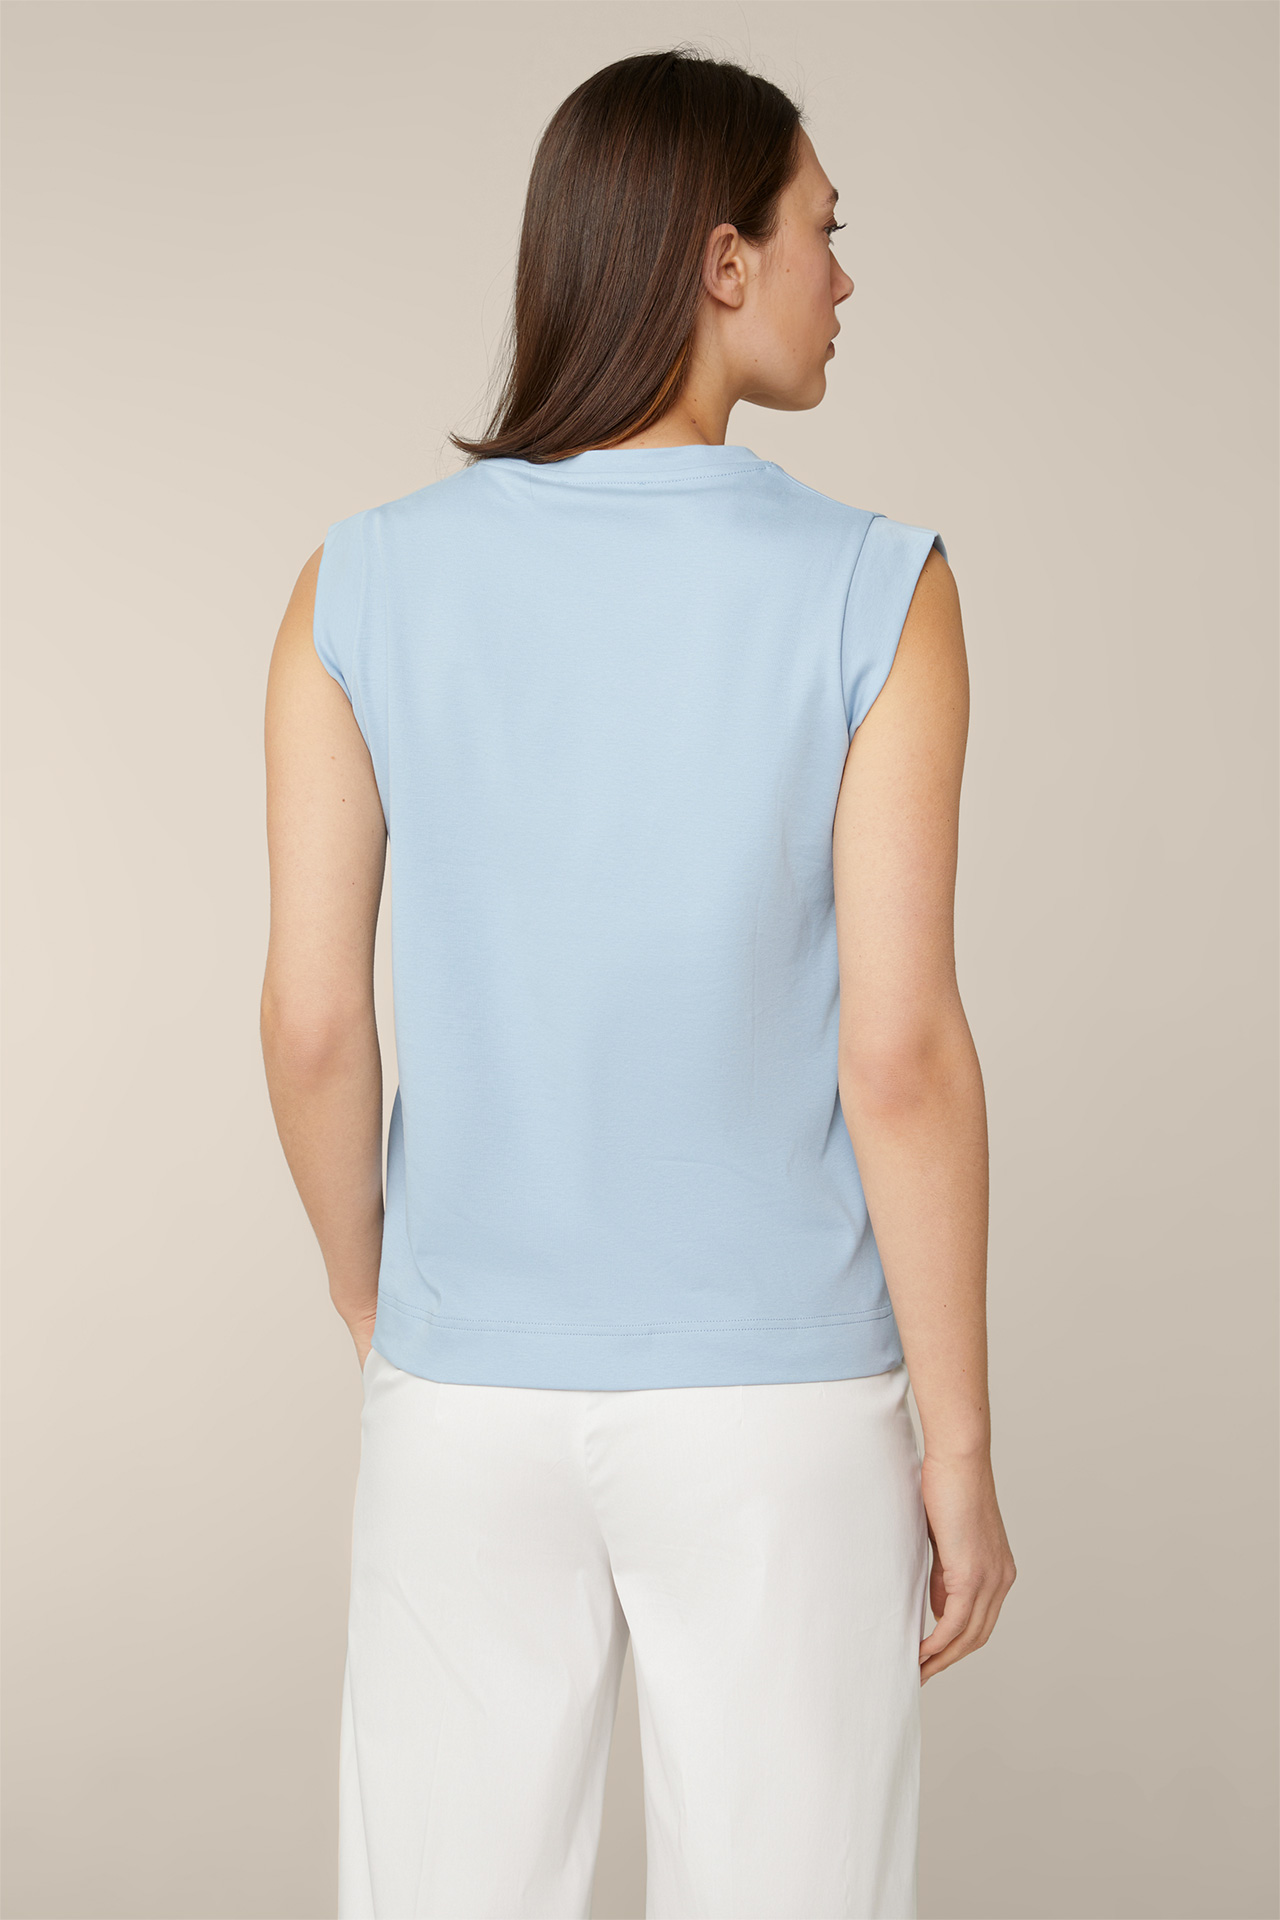 Cotton Interlock Shirt in Blue